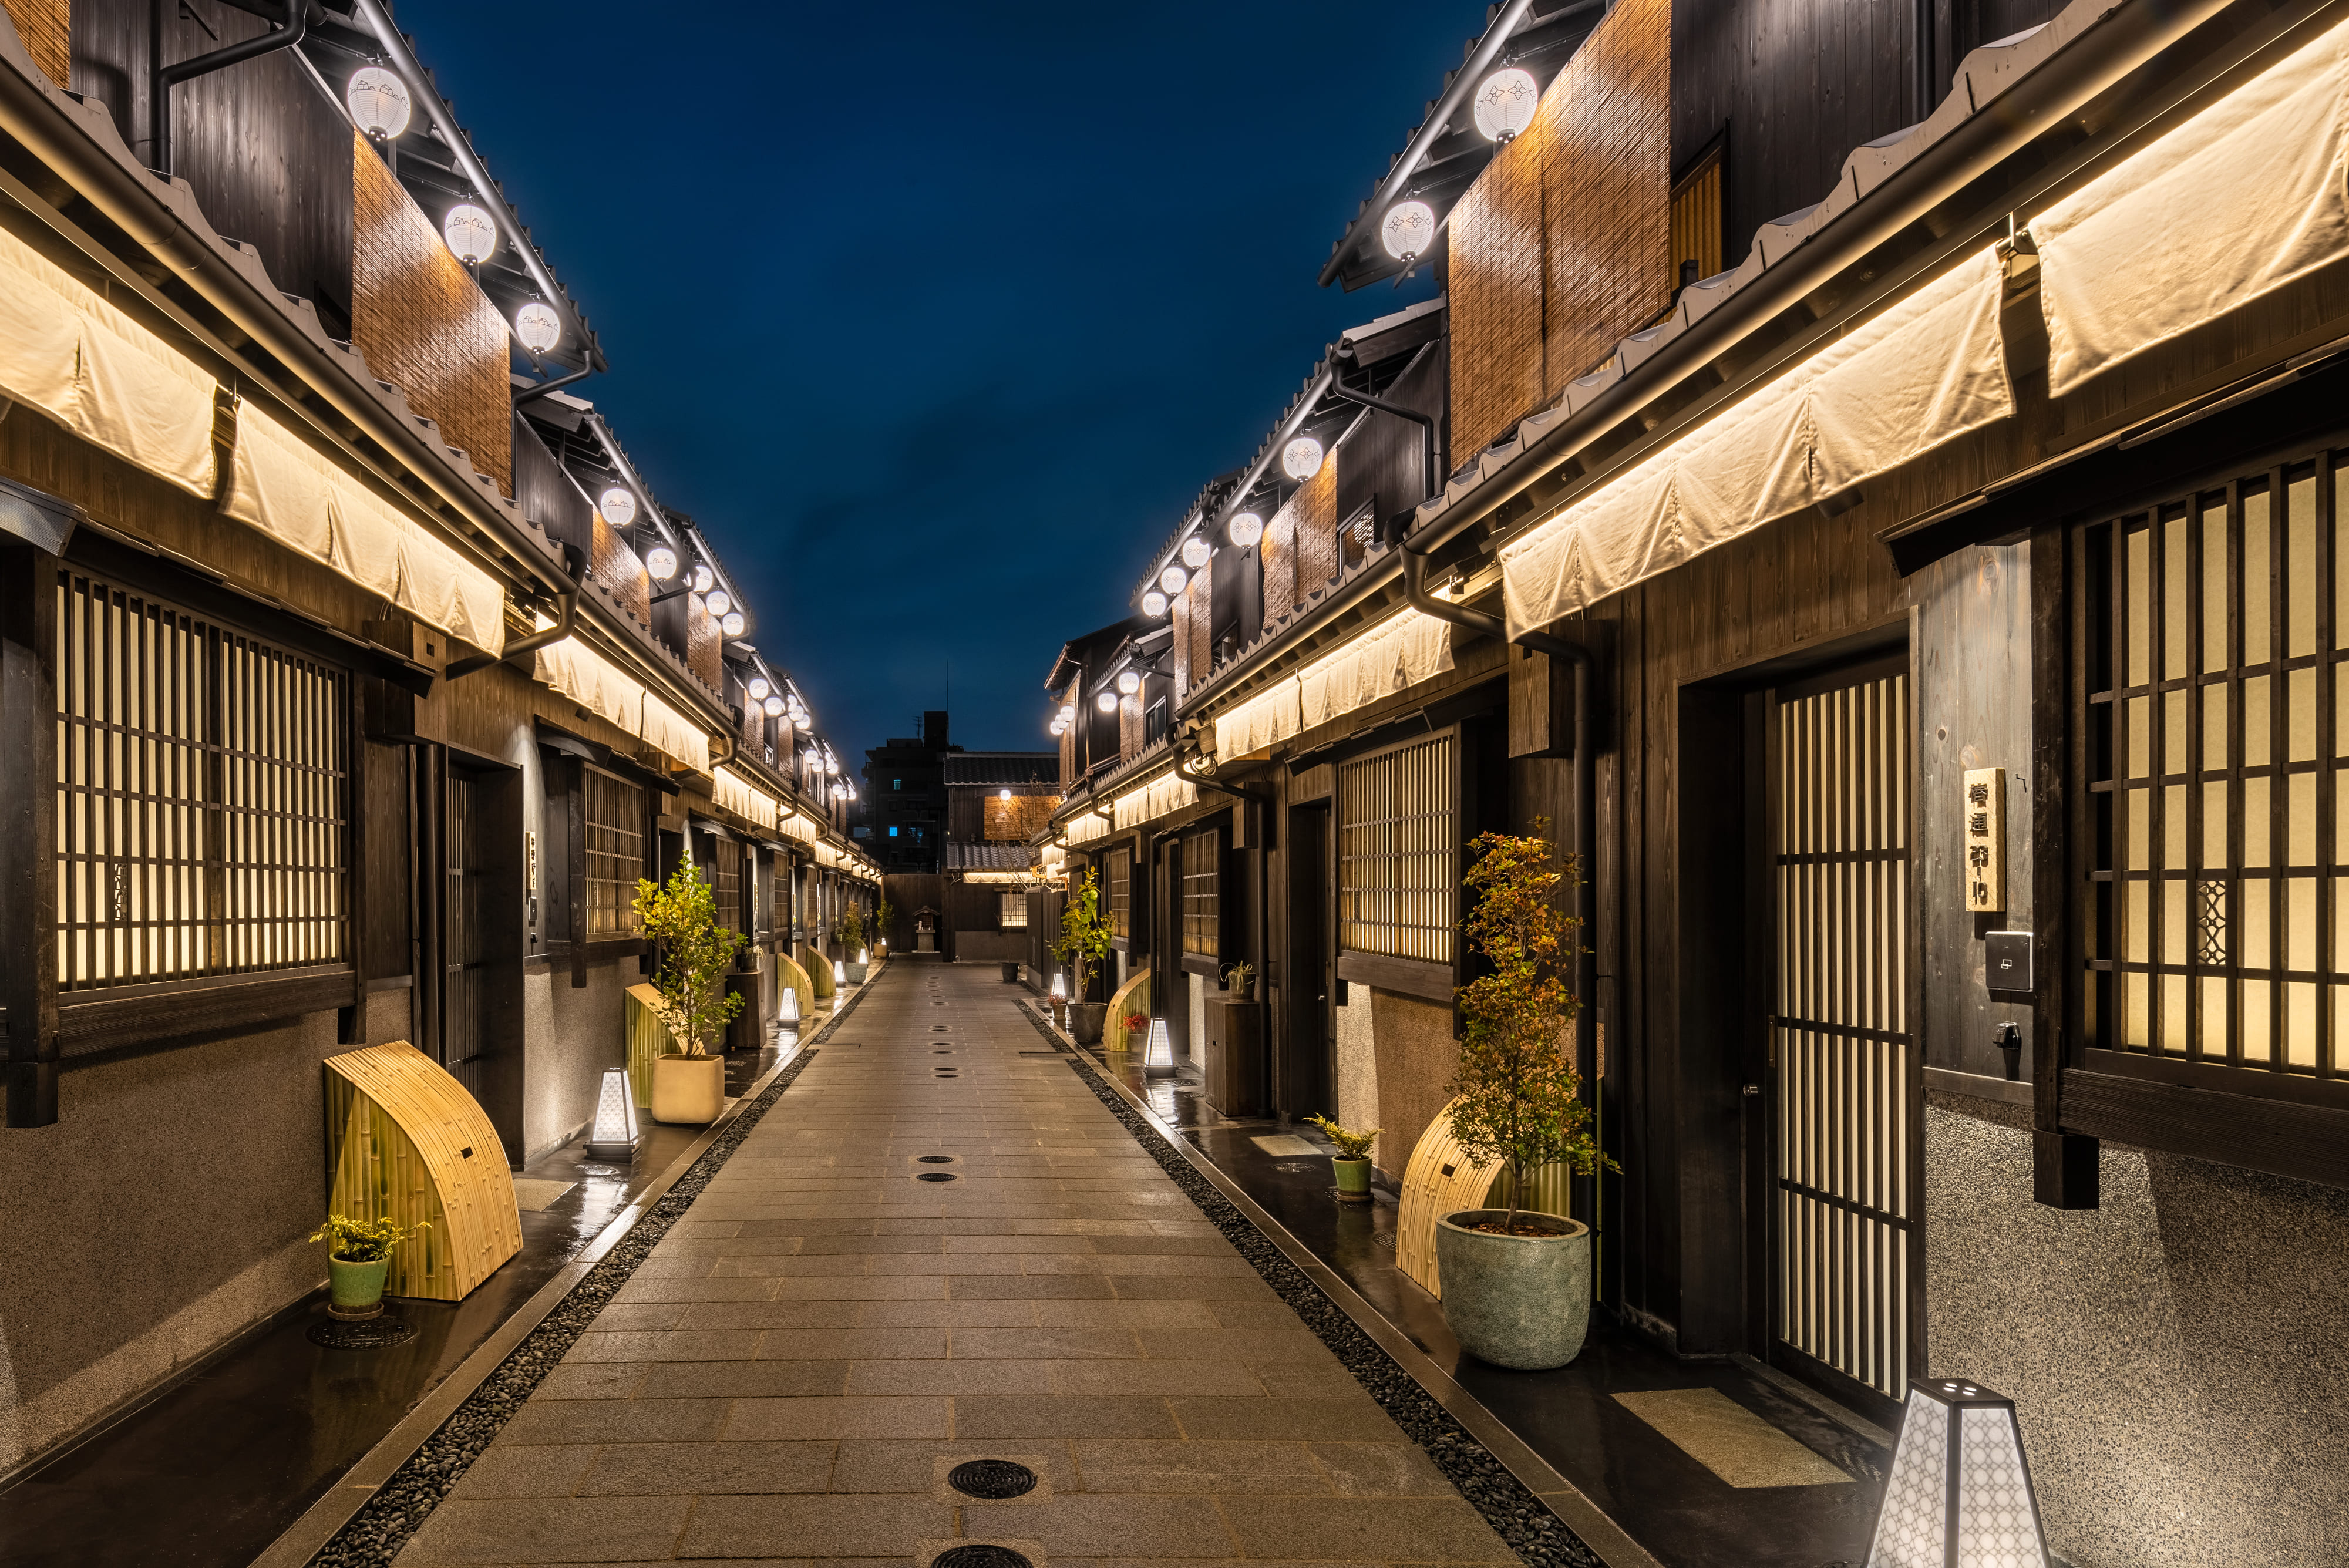 町家の並ぶ路地一体を旅館へリノベーション Nazuna 京都 椿通 開業 株式会社nazunaのプレスリリース